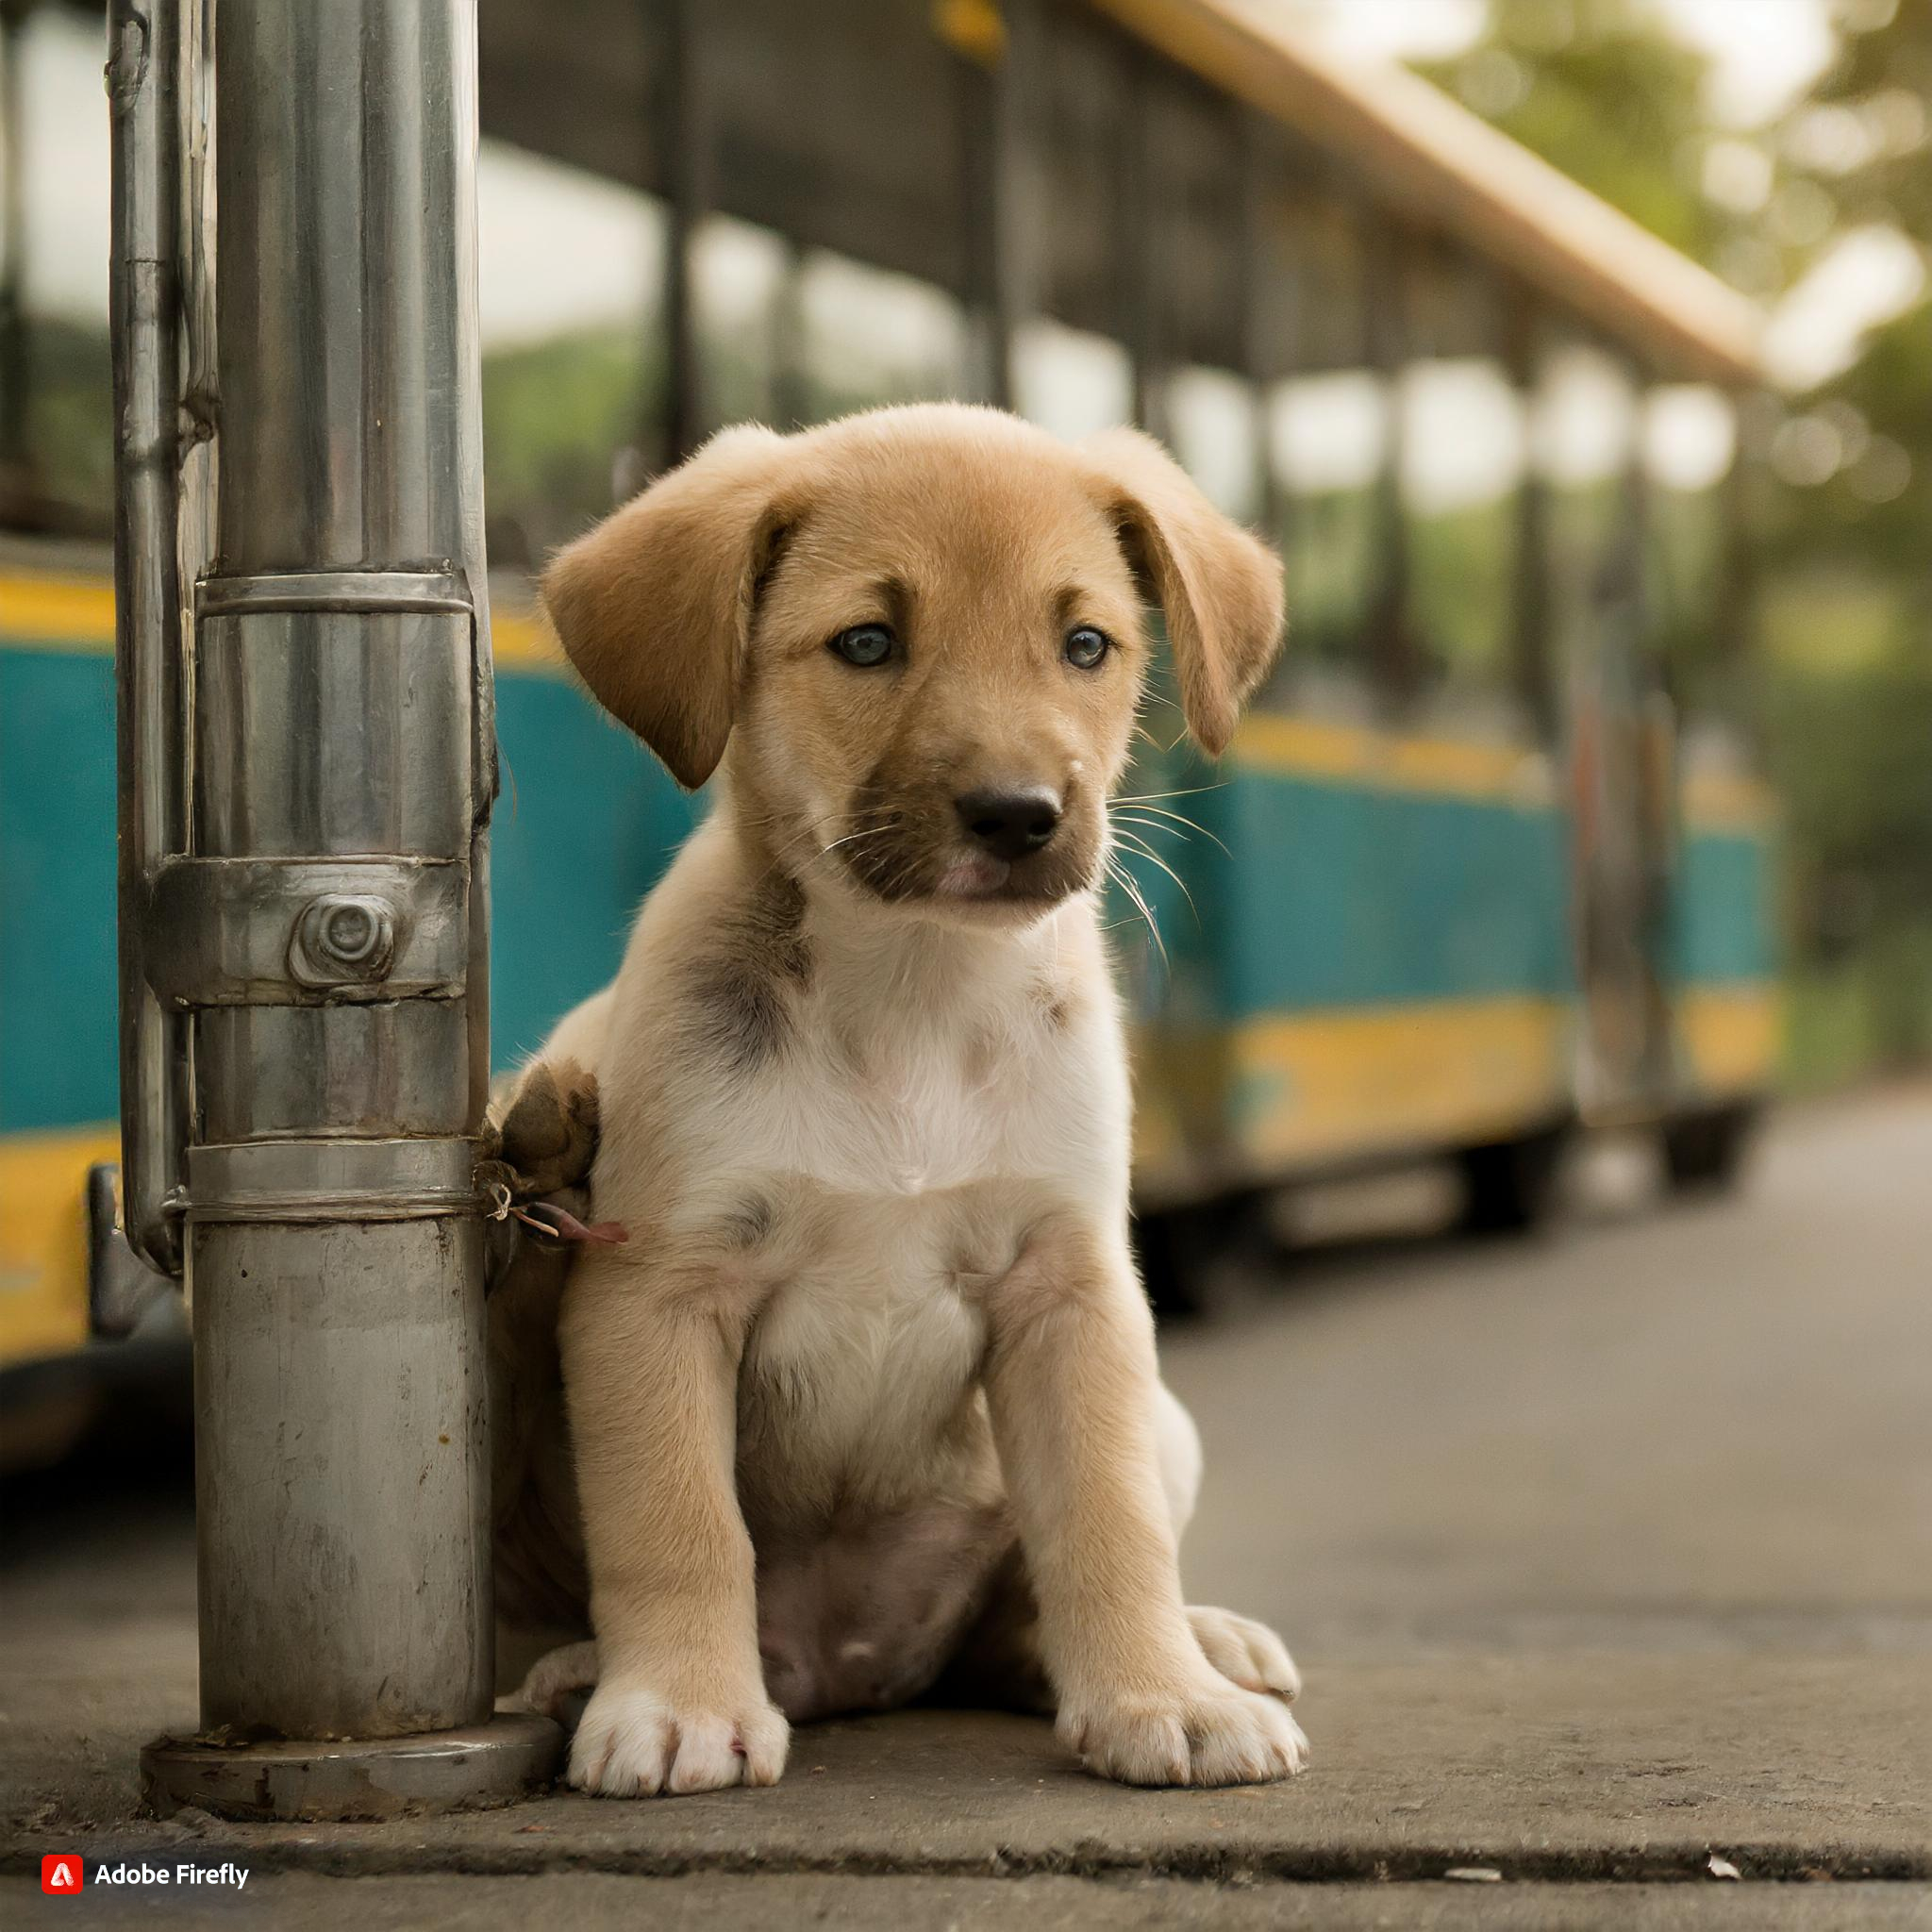 버스를 기다리고 있는 강아지 사진